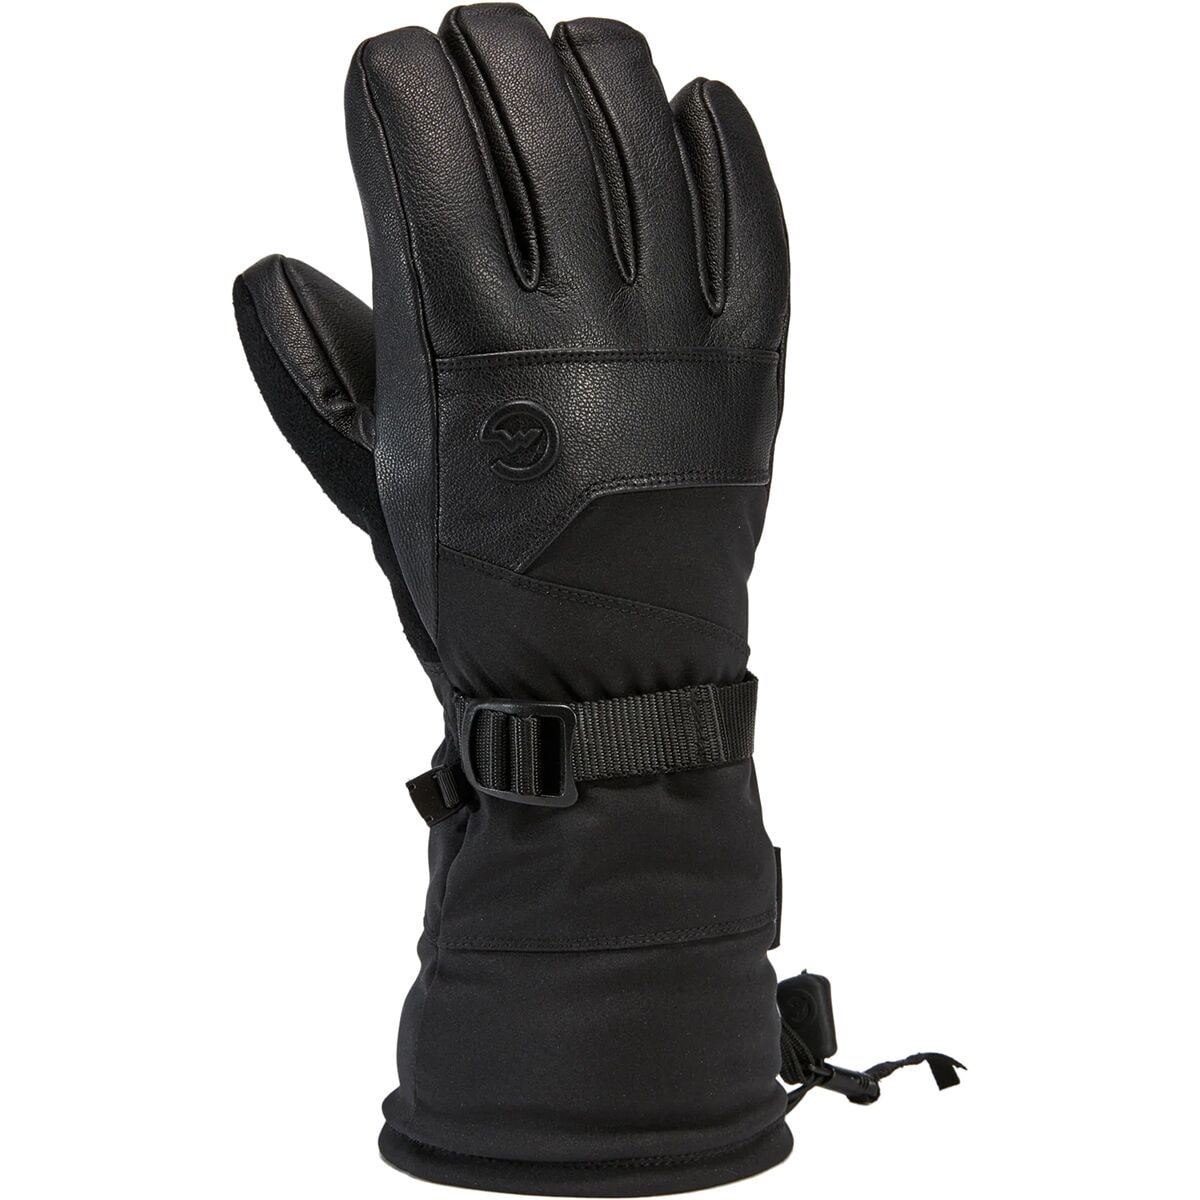 Gordini Polar Gloves - Men's Black